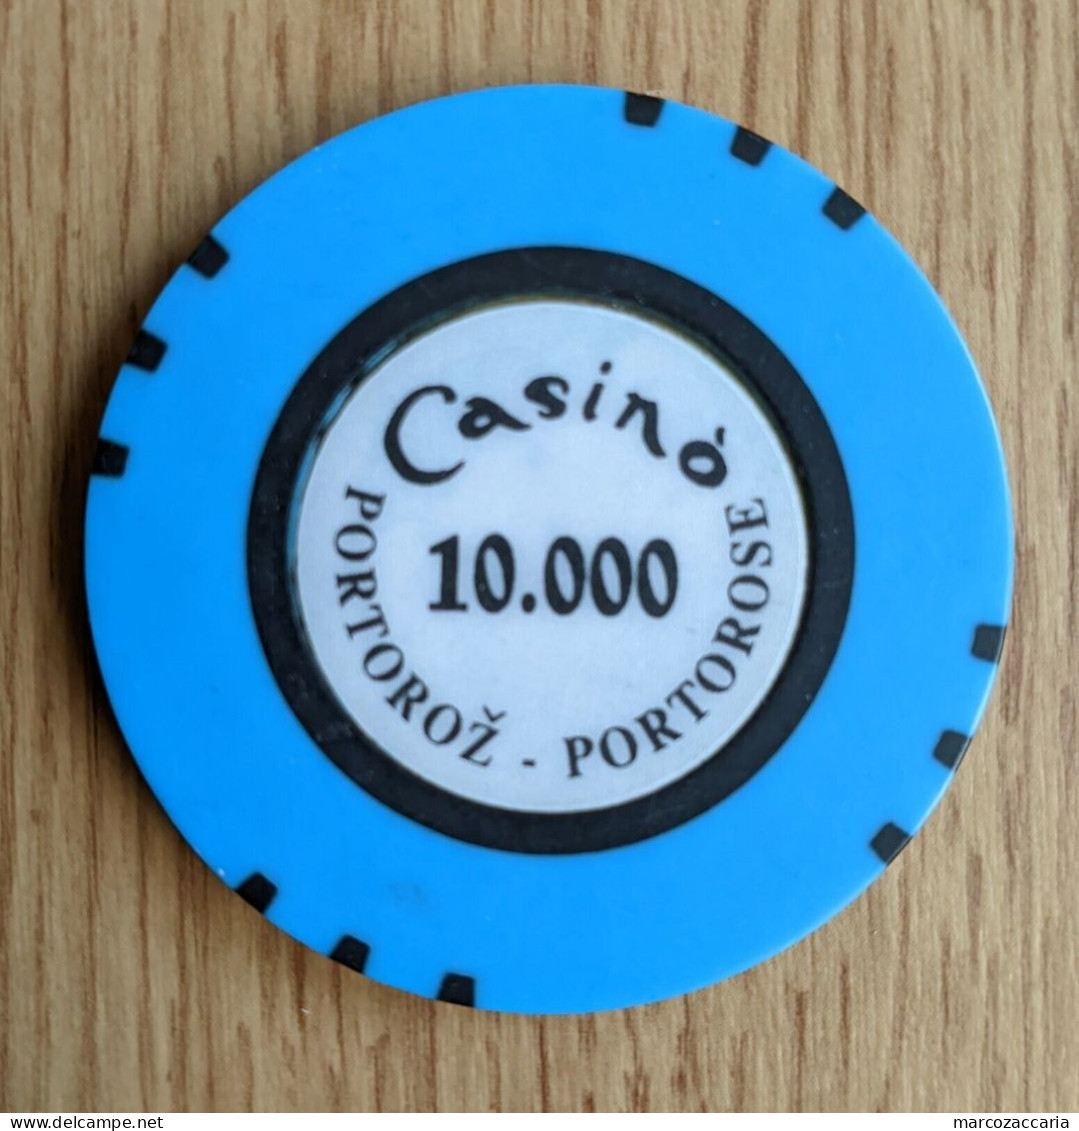 GETTONE, TOKEN, FICHE CASINO' PORTOROŽ/PORTOROSE (SLOVENIA) 10.000 LIRE - Casino